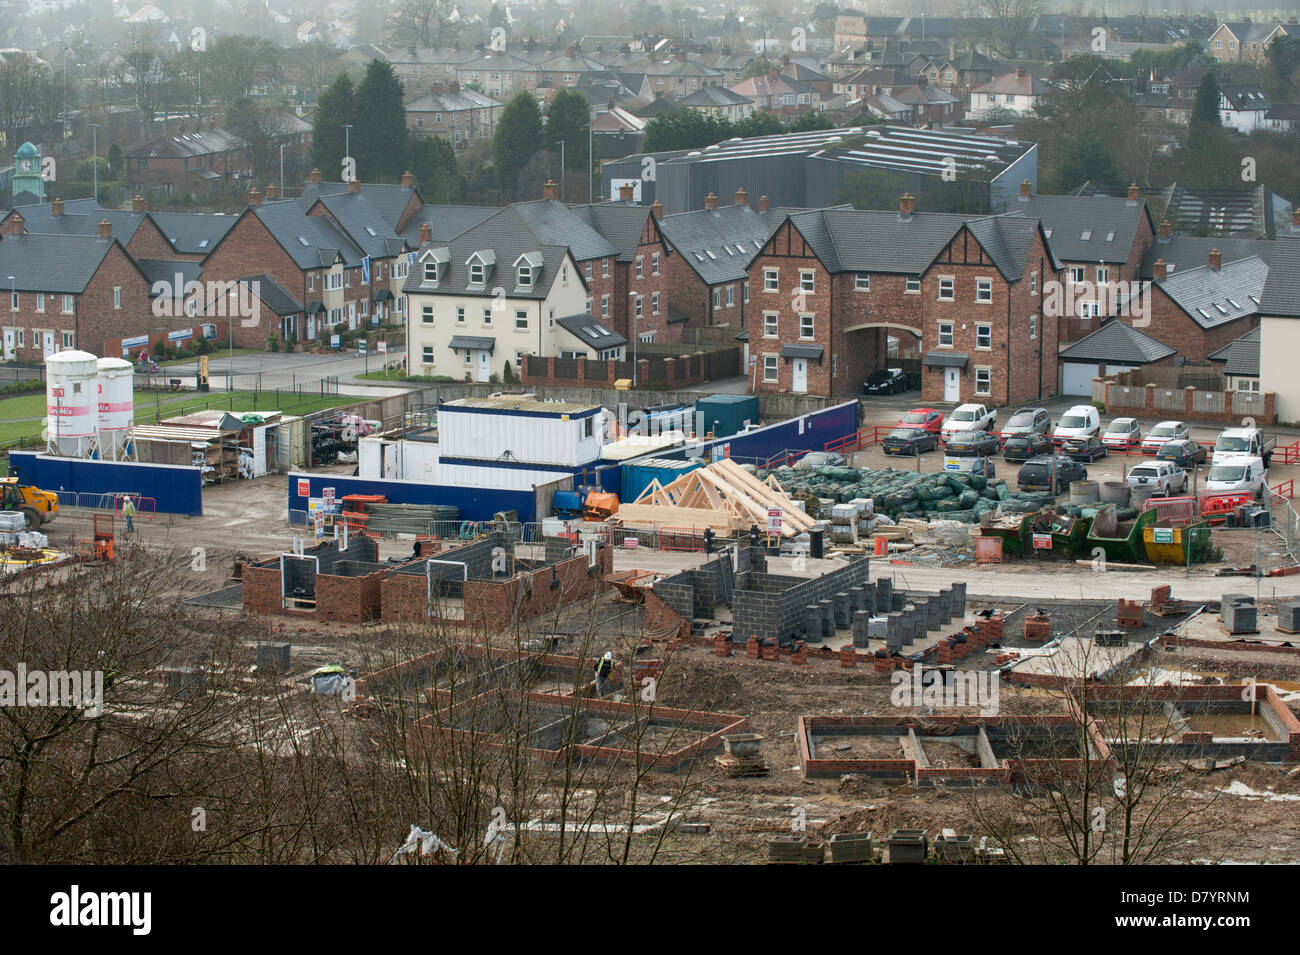 Voir plus haut les nouvelles offres et demandes de logement en cours de construction (certaines maisons terminé et certains en cours de construction) - Guiseley, Leeds, West Yorkshire, GB, au Royaume-Uni. Banque D'Images